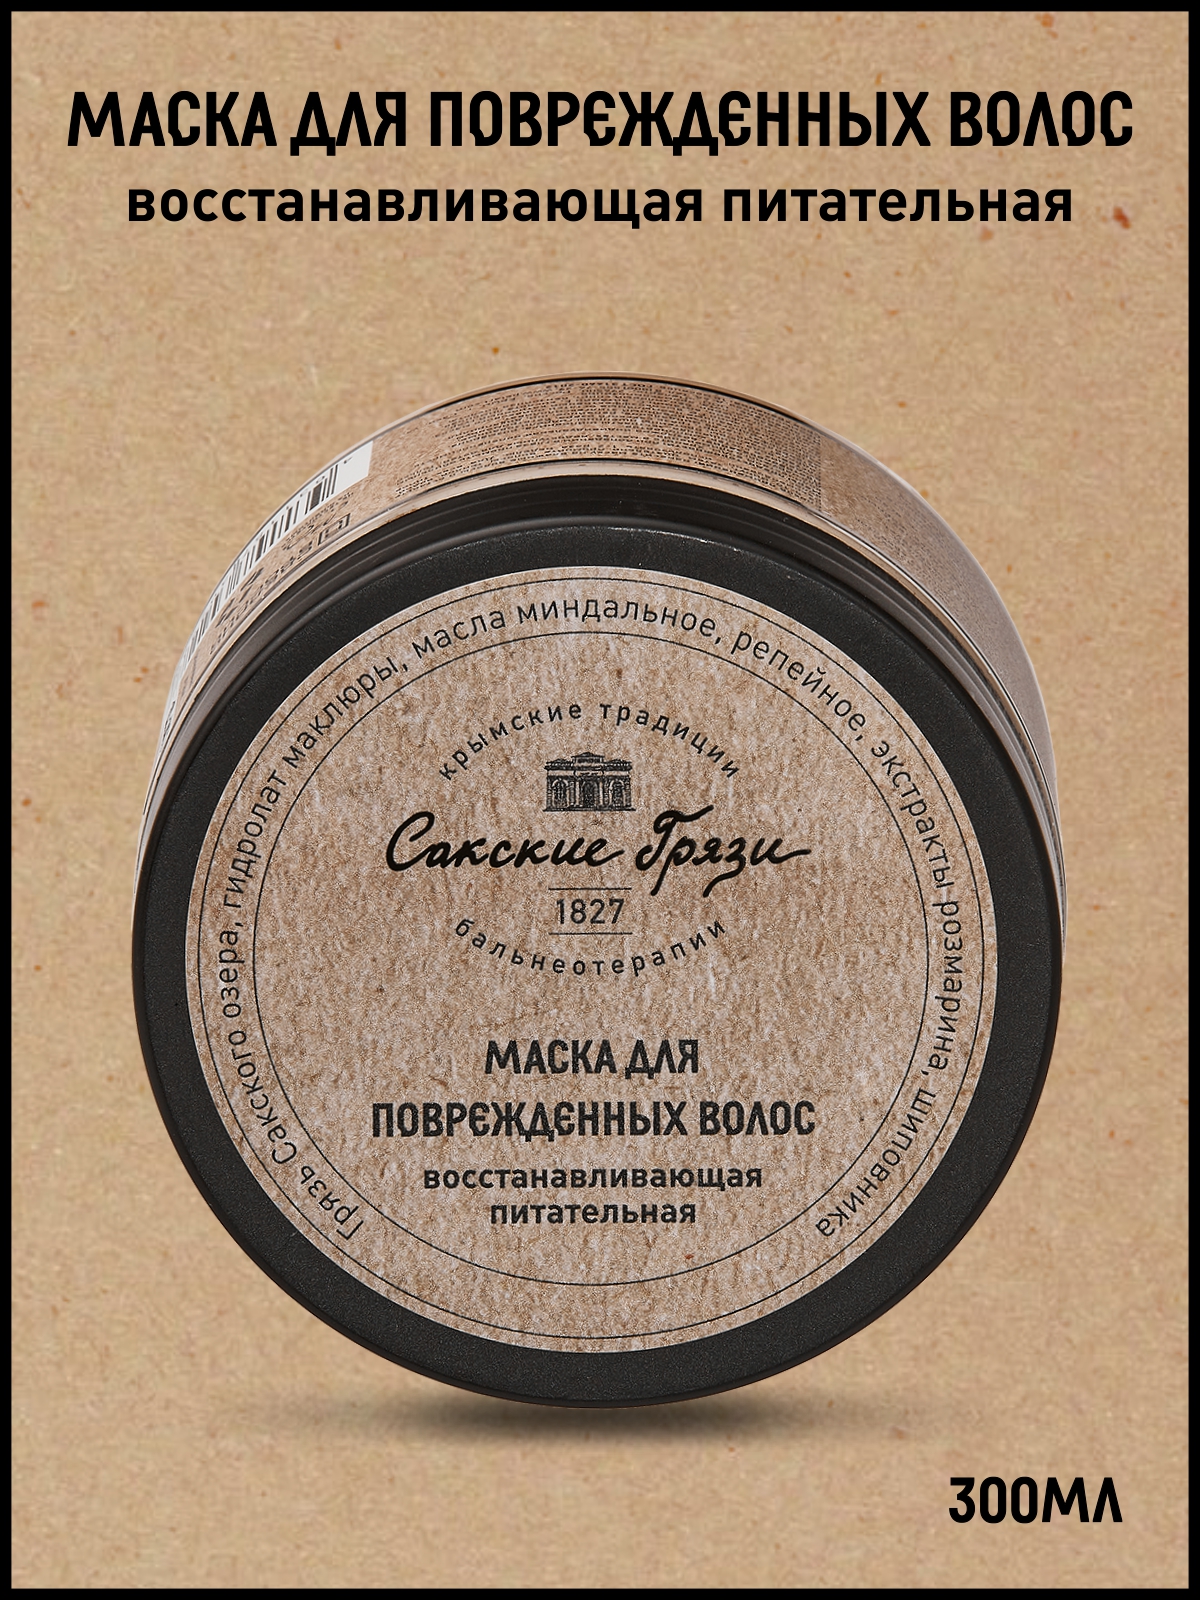 Маска для волос Крымские традиции бальнеотерапии Восстанавливающая Питательная 300мл